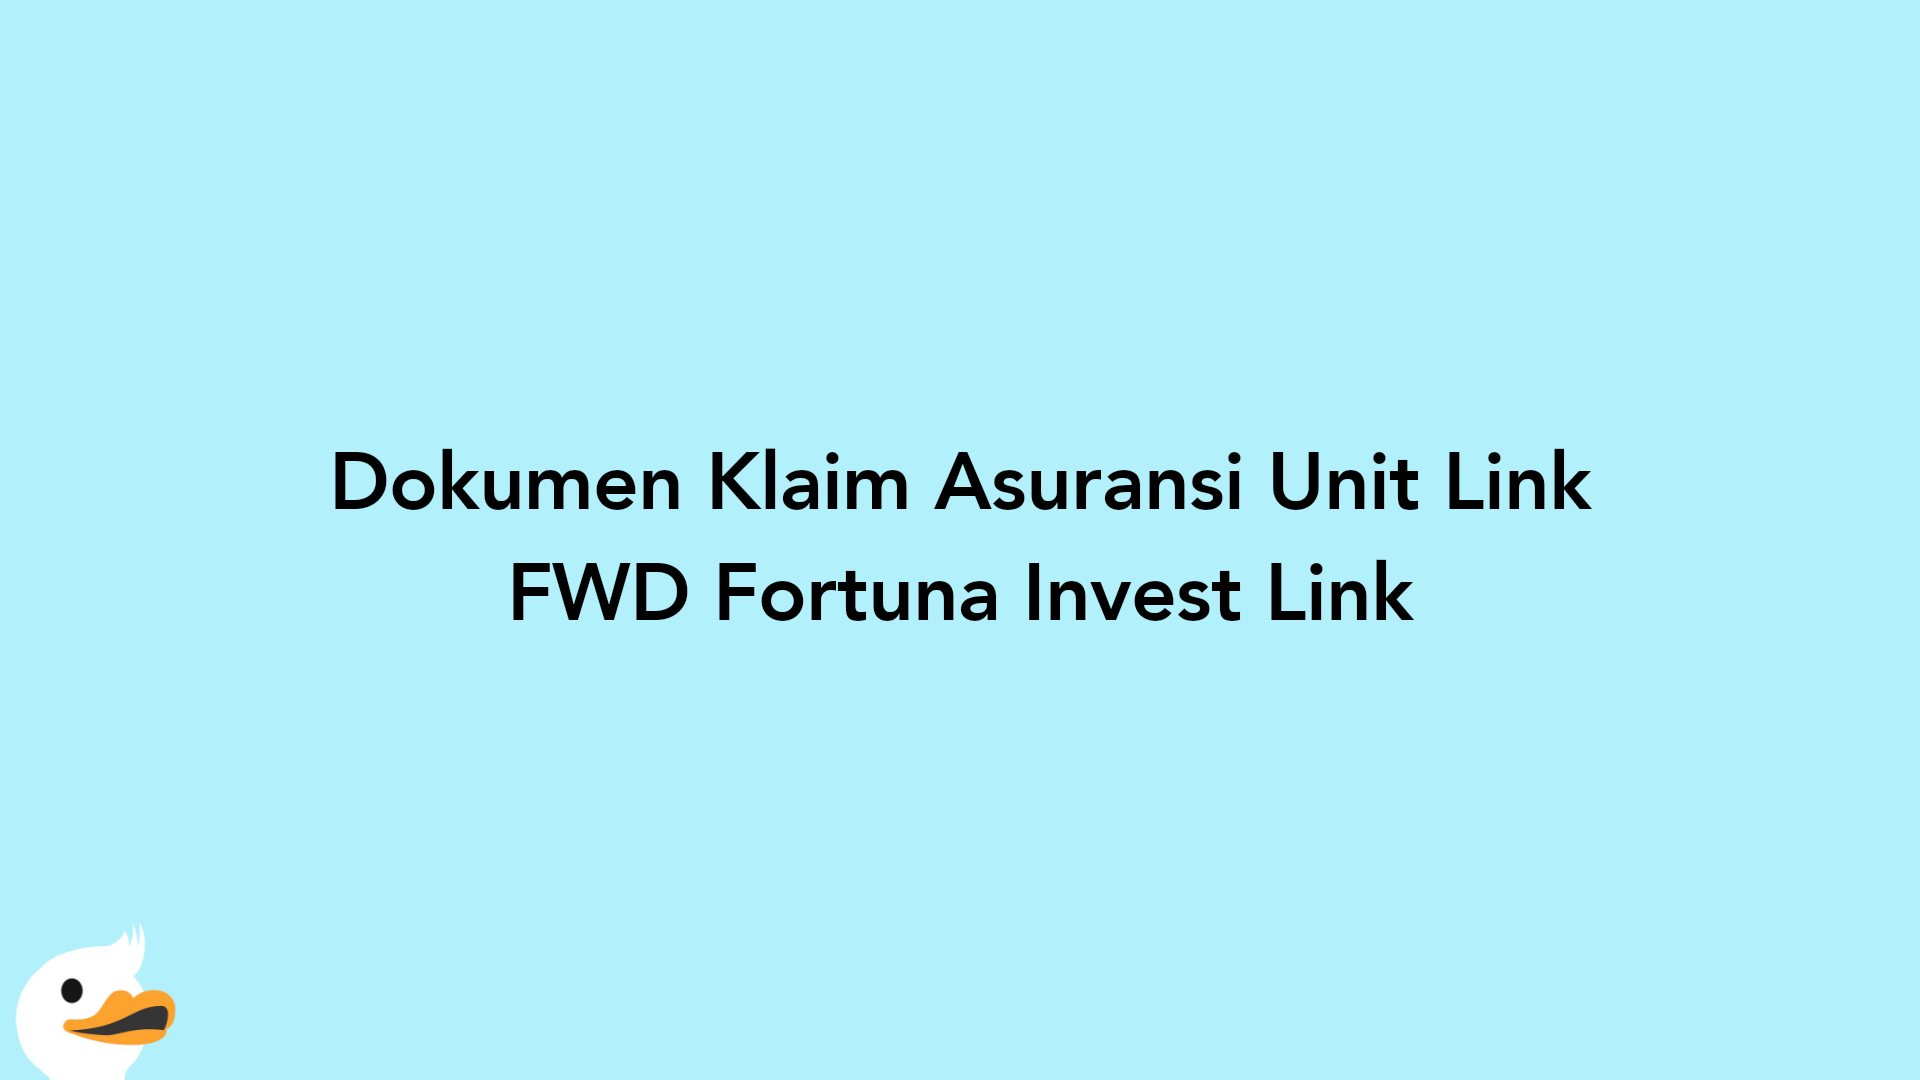 Dokumen Klaim Asuransi Unit Link FWD Fortuna Invest Link